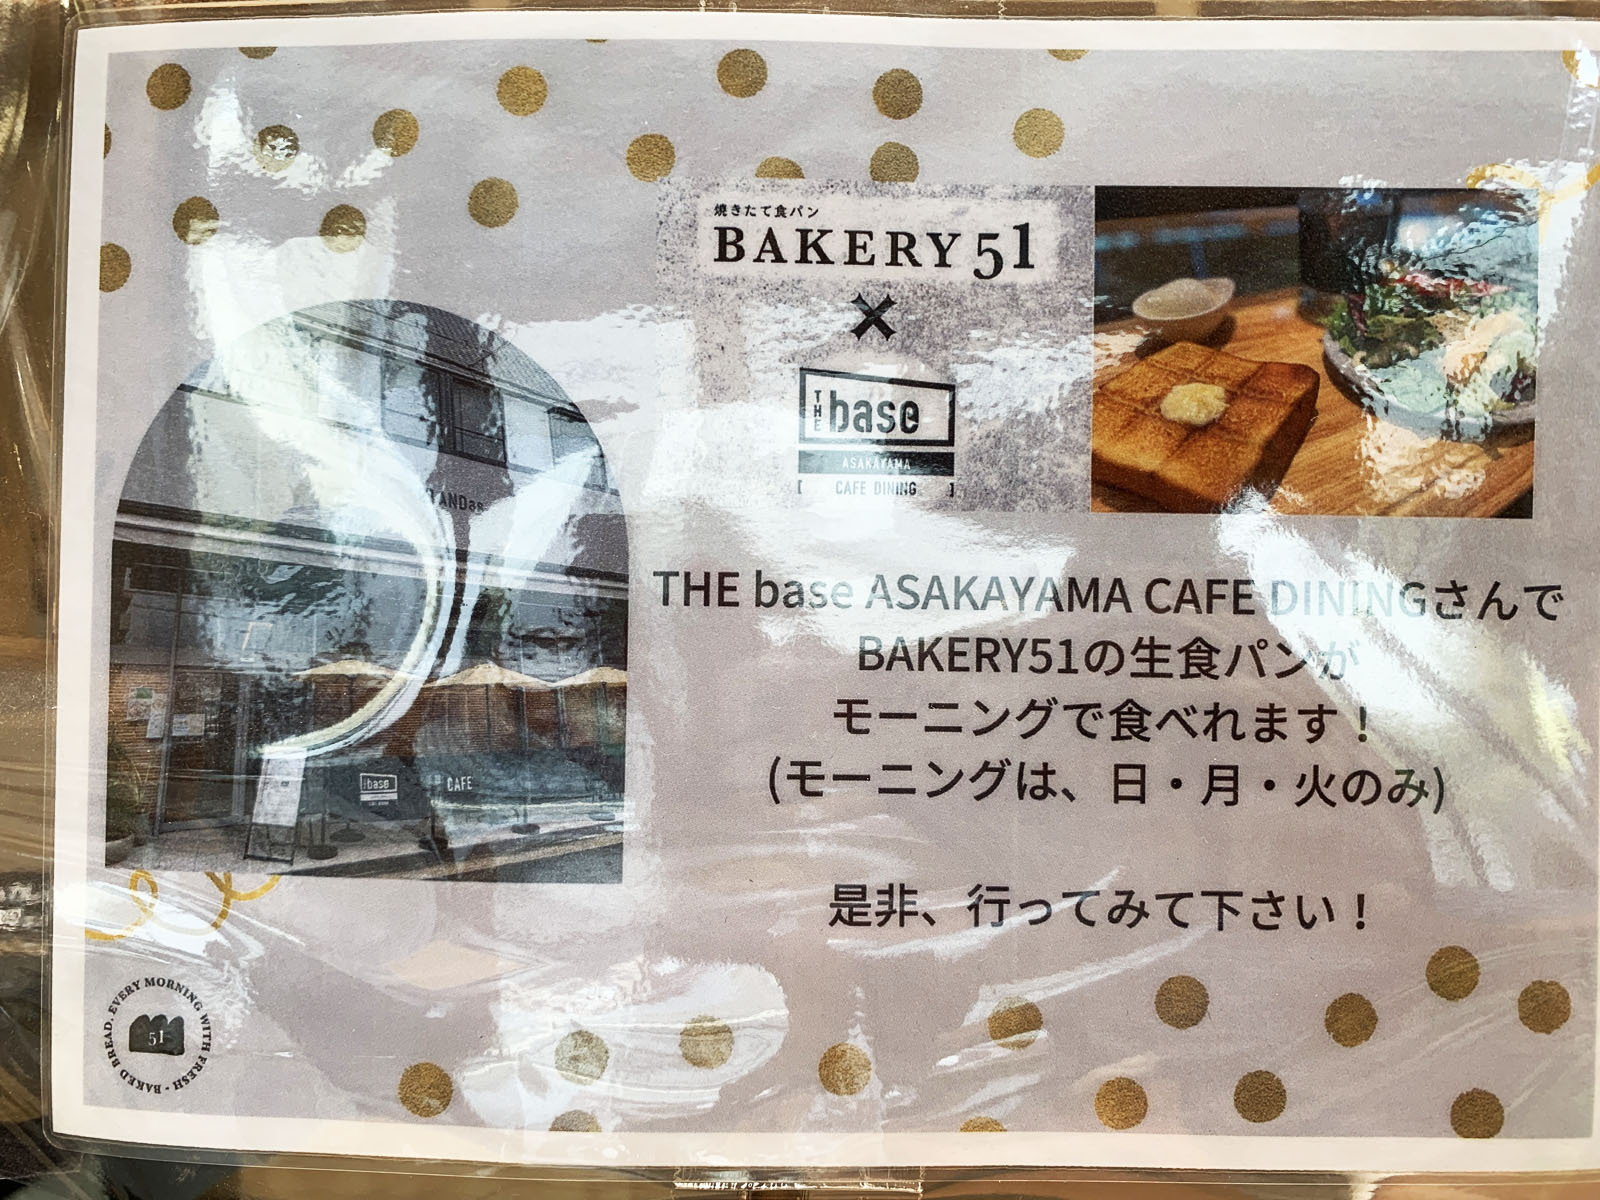 THE base ASAKAYAMA CAFE DINING